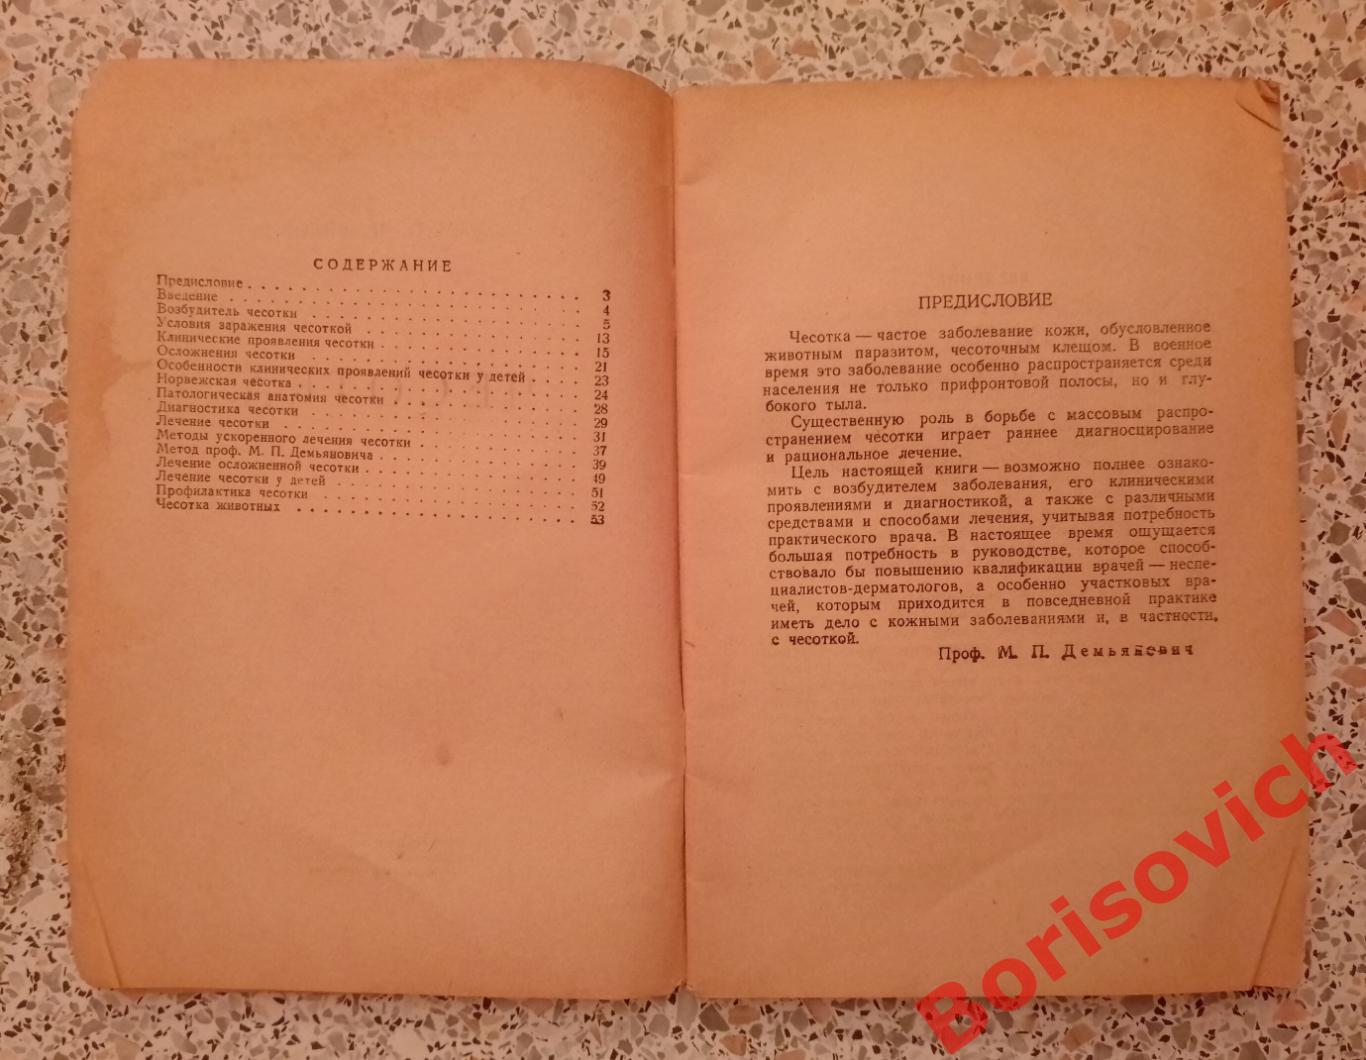 М. П. Демьянович ЧЕСОТКА медгиз 1947 г 1